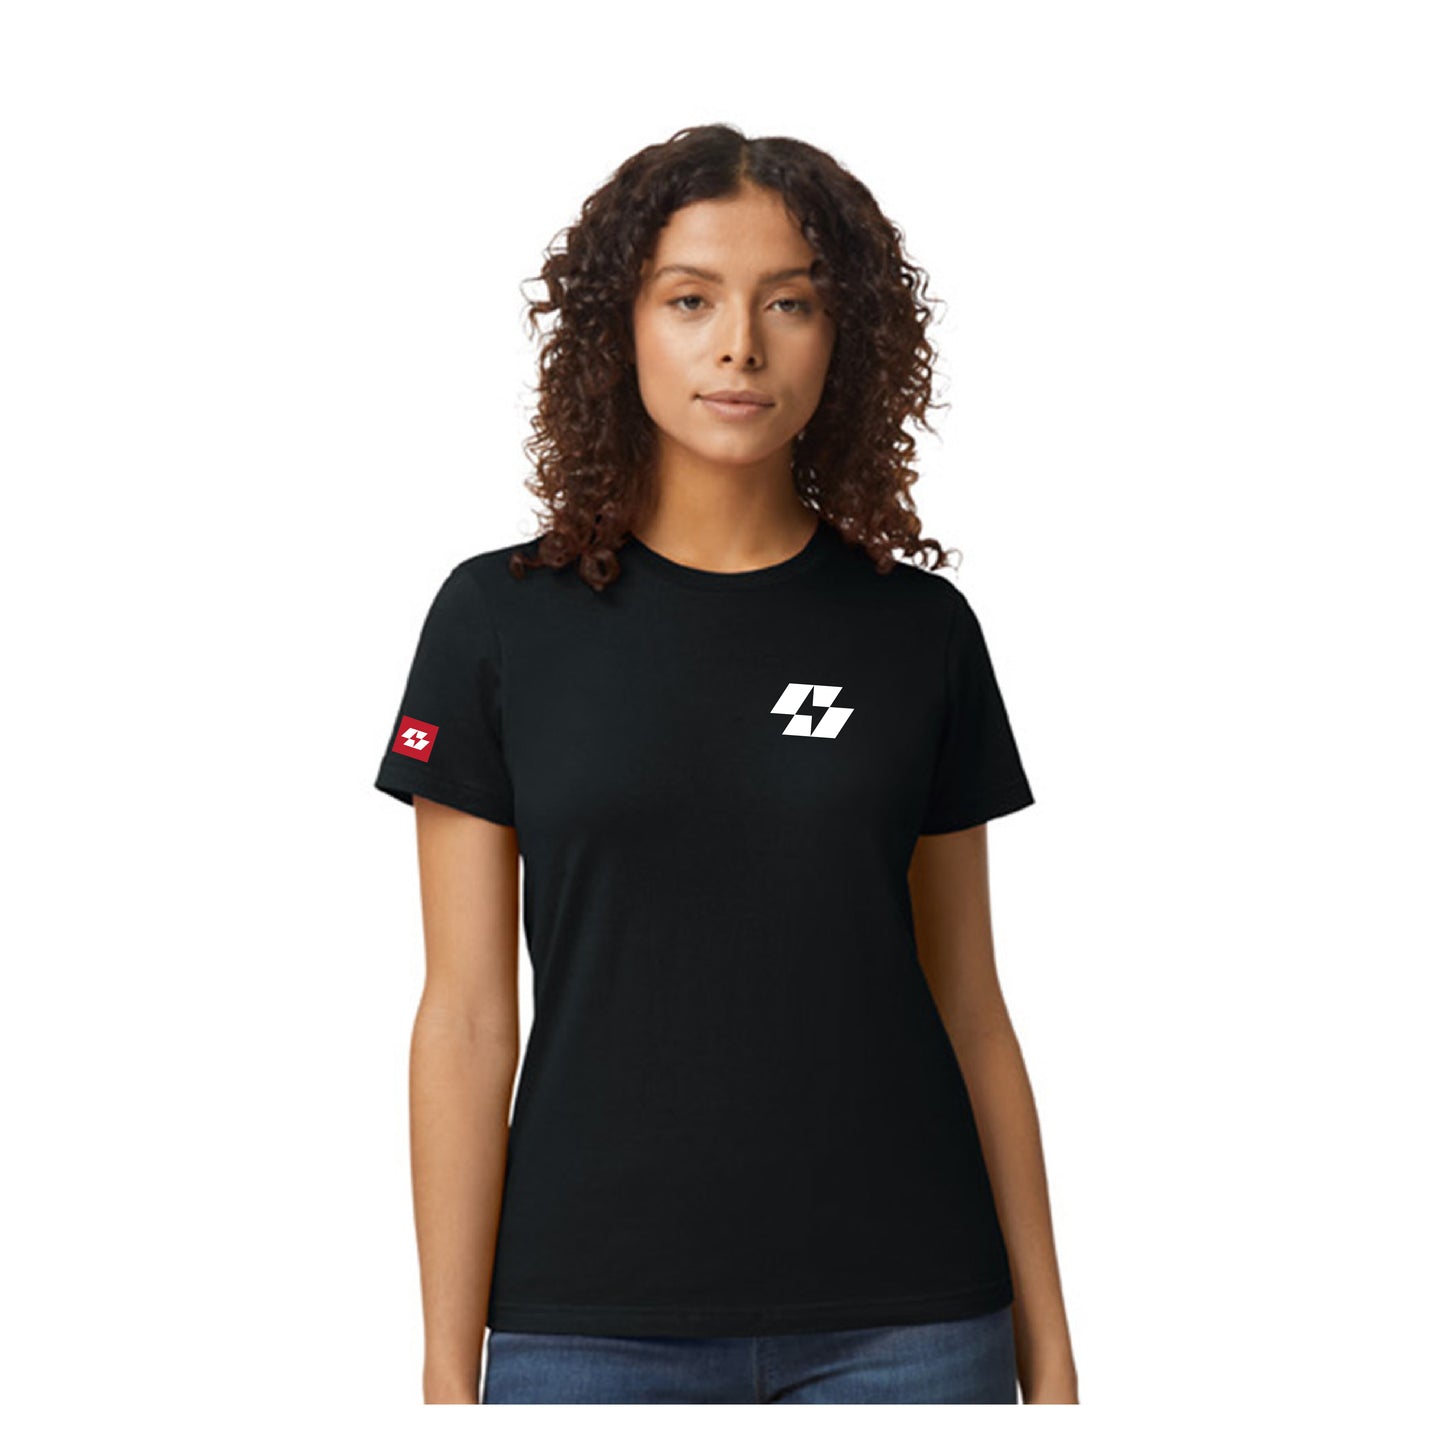 Robot Force ® Lightning Cotton T-Shirt